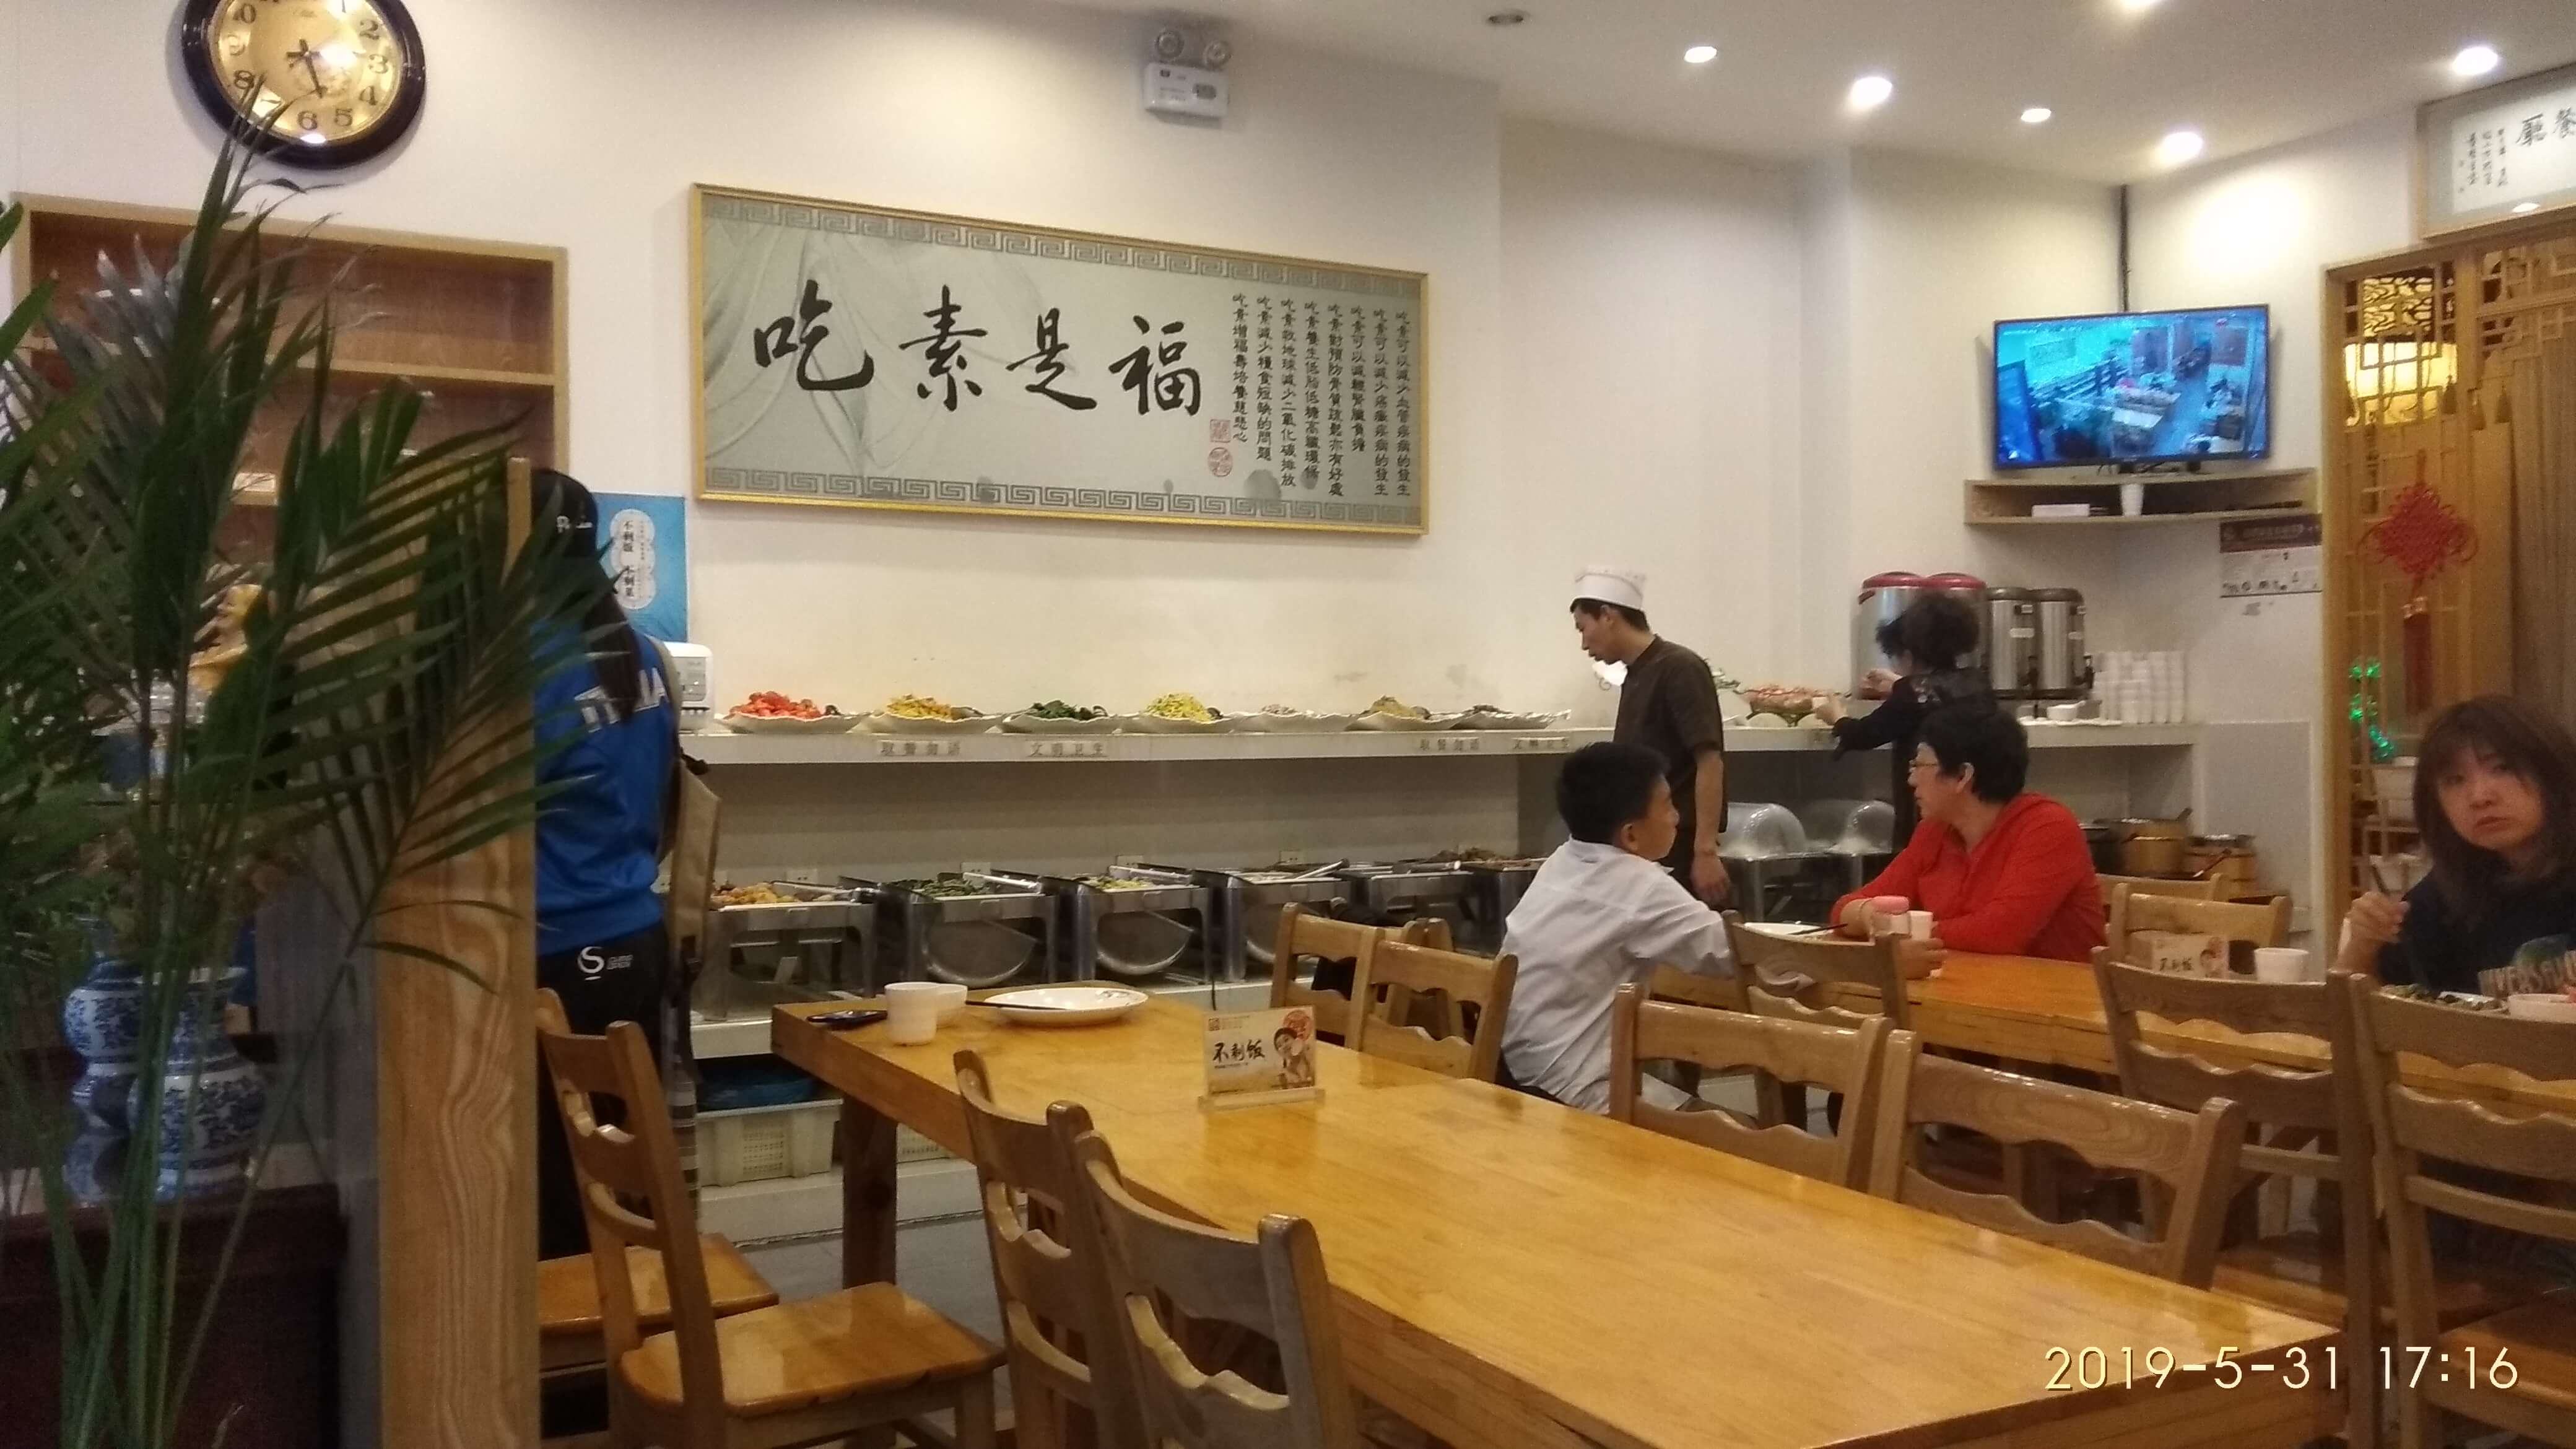 道心素食自助餐厅 Nhà hàng chay tự chọn ở Thường Xuân, Cát Lâm,